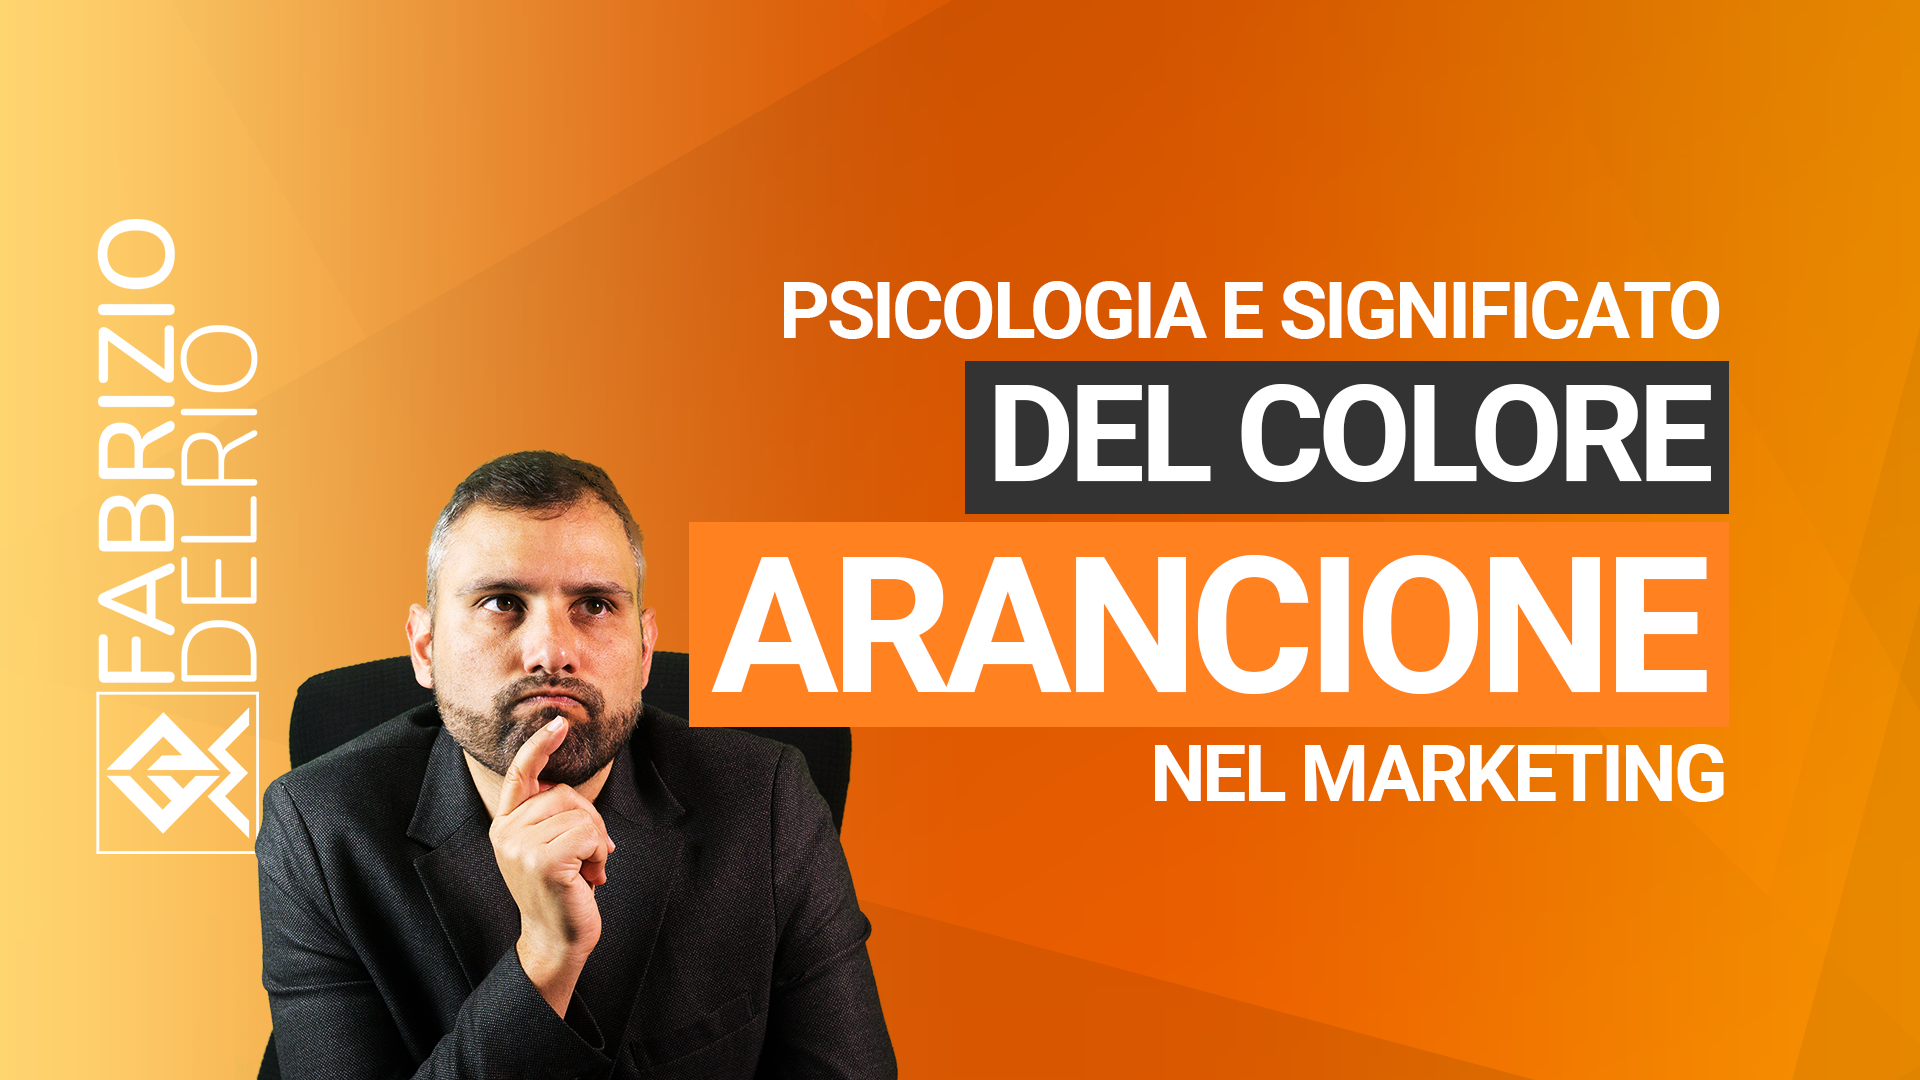 psicologia-significato-del-colore-arancione-marketing-youtube.png